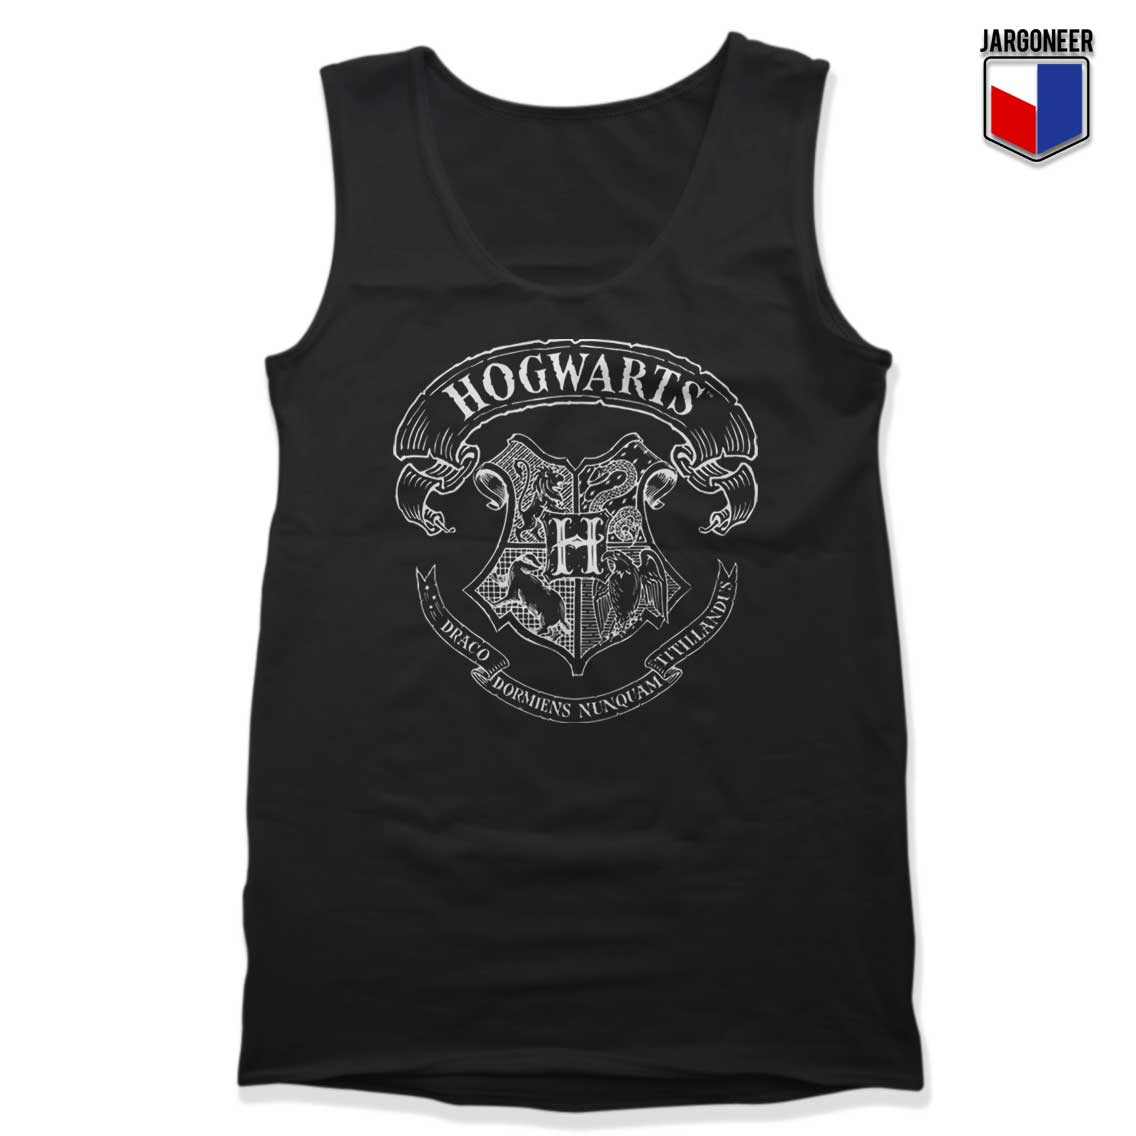 Harry Potter Hogwarts Tank Top - Shop Unique Graphic Cool Shirt Designs